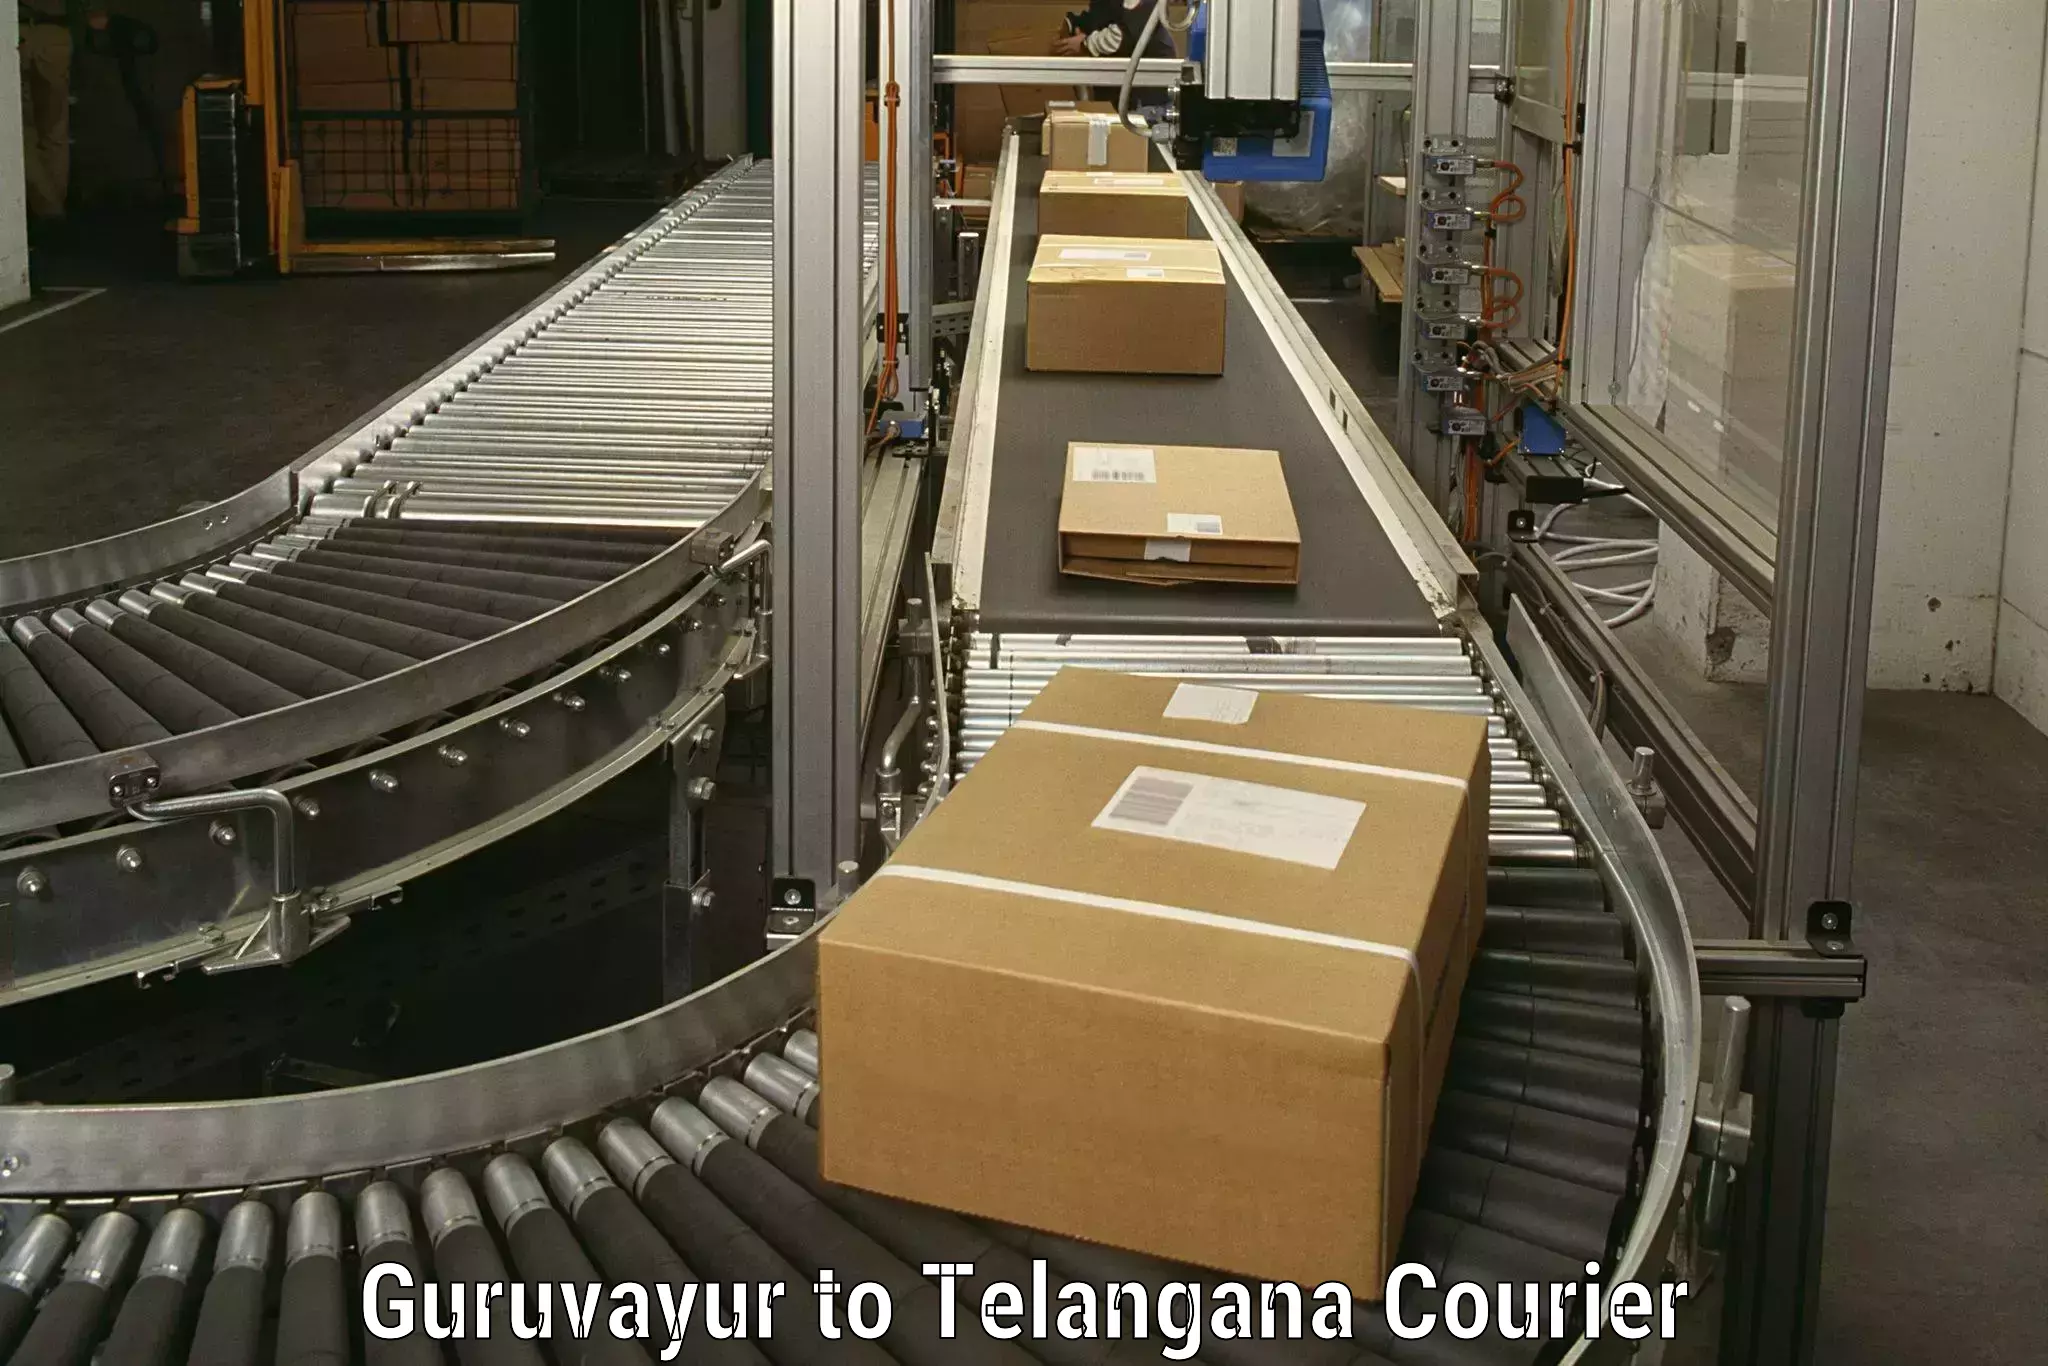 Furniture moving experts Guruvayur to Kadthal